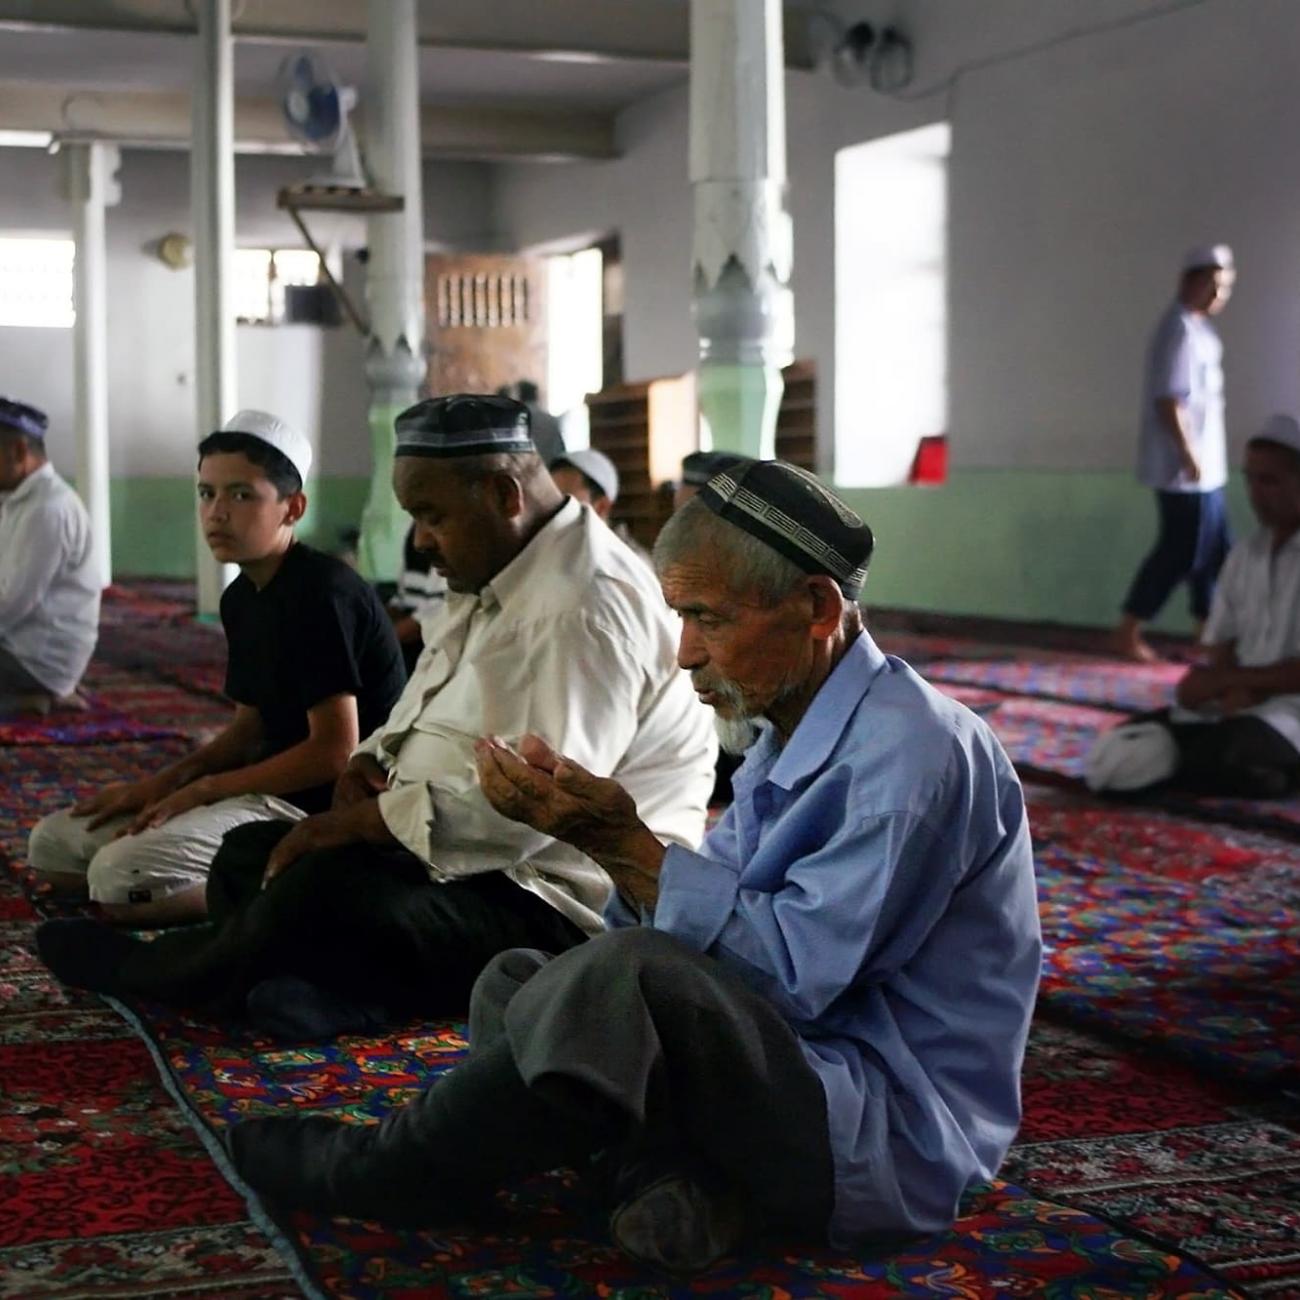 Узбекистан мусульманская. Узбекистан мусульмане. Мечеть узбека.